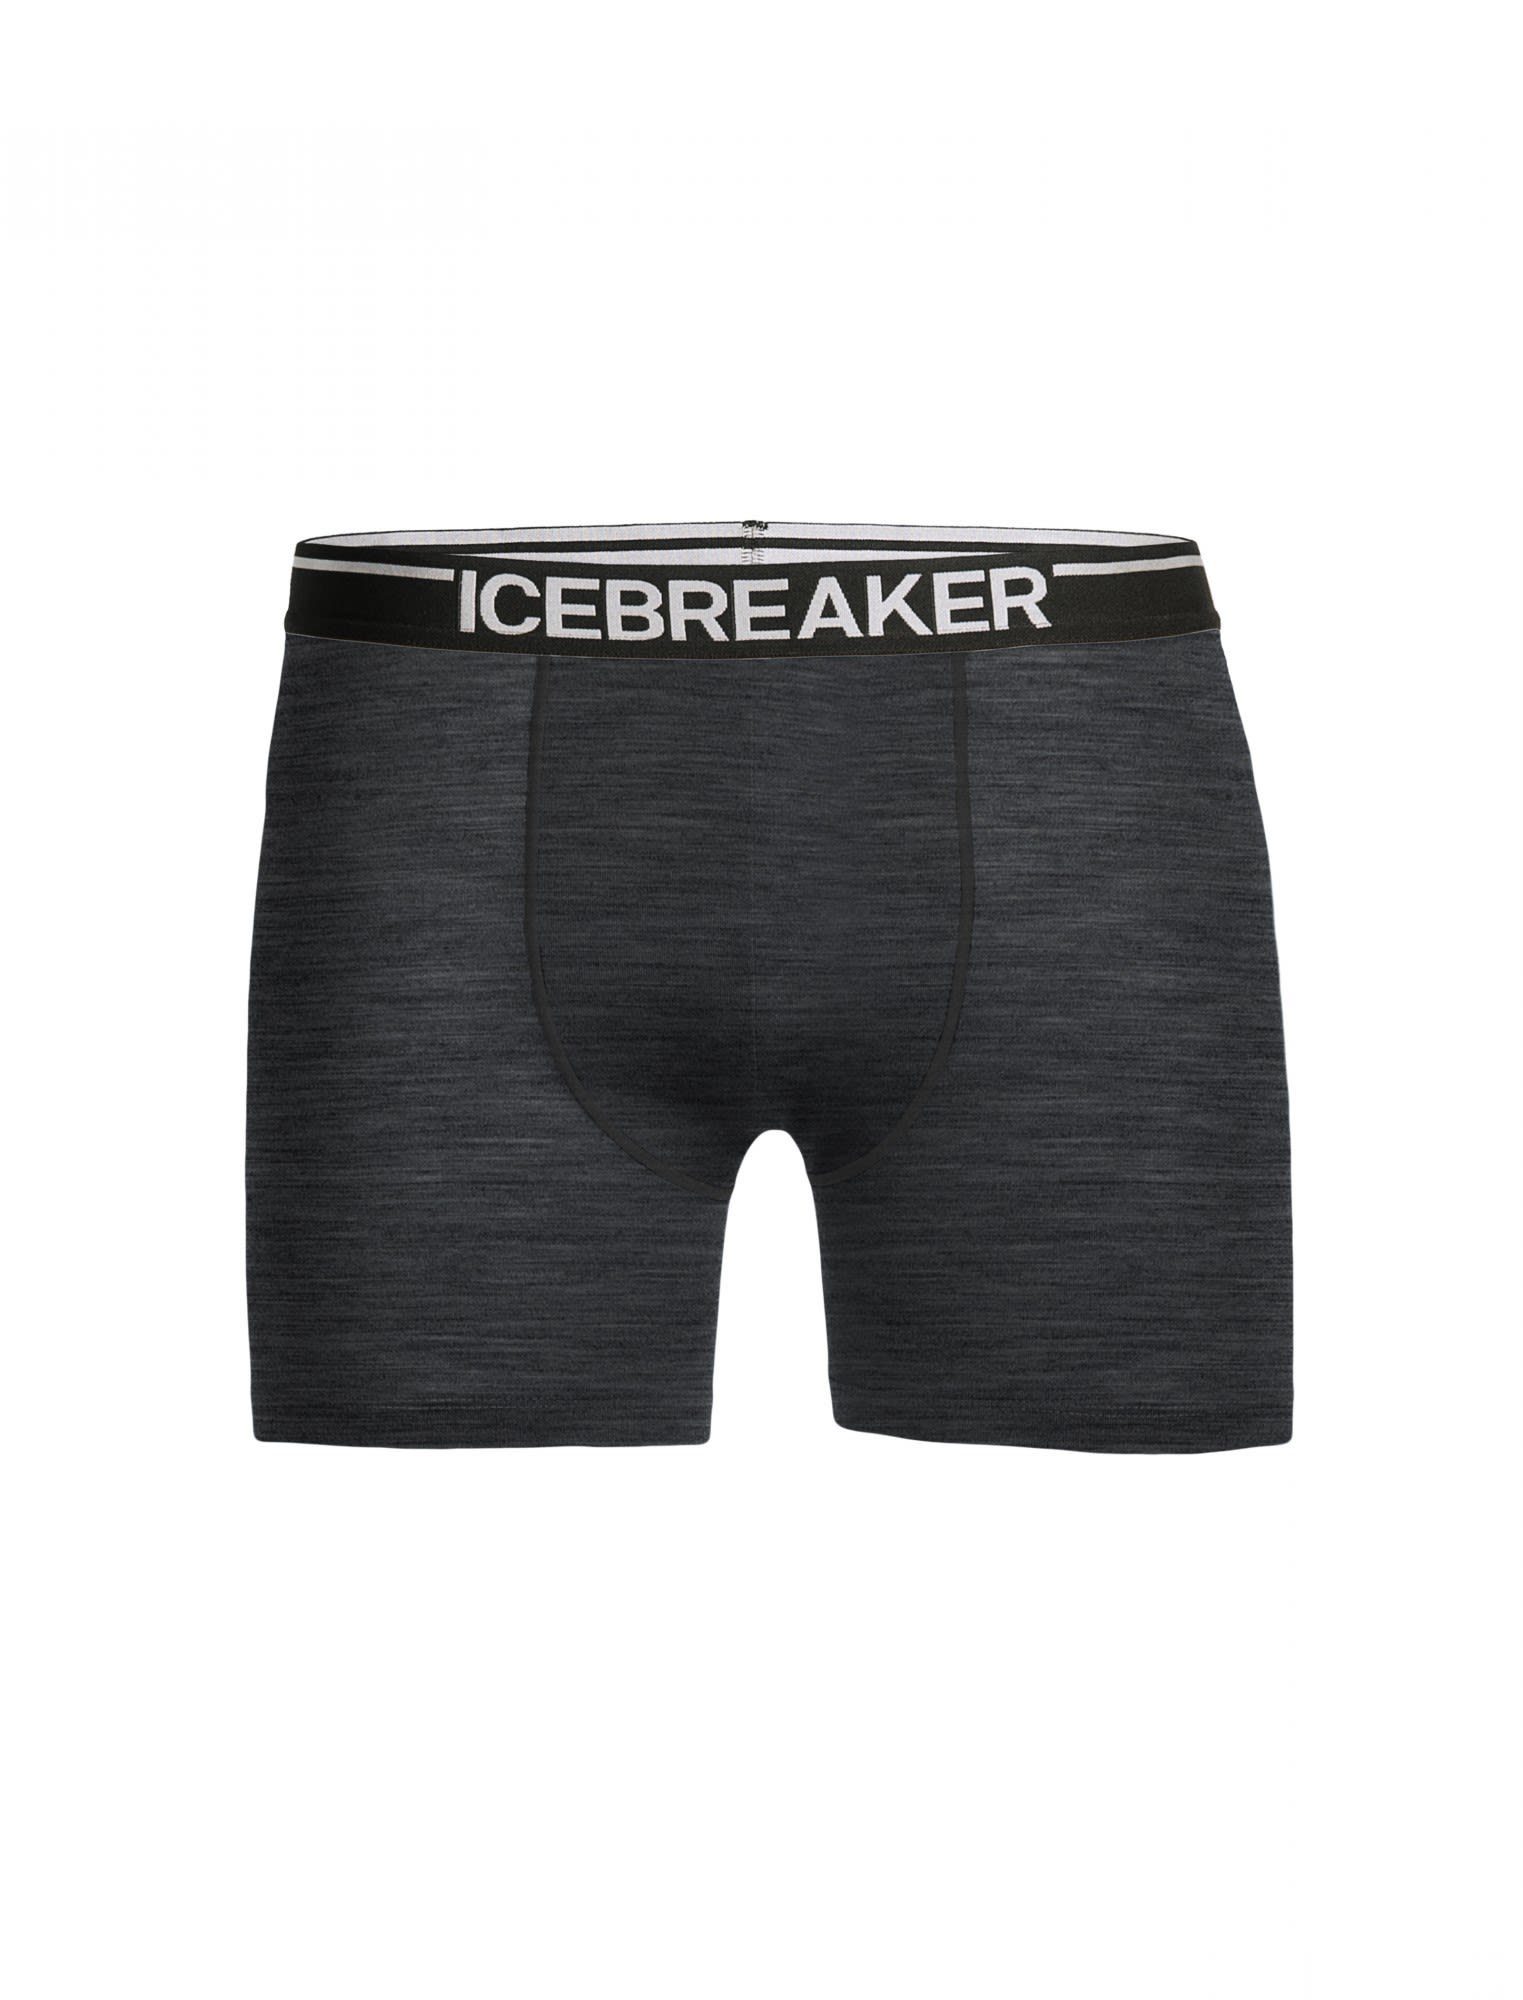 Lange Lange Unterhose Grey Icebreaker Anatomica Herren Icebreaker M HTHR Boxers